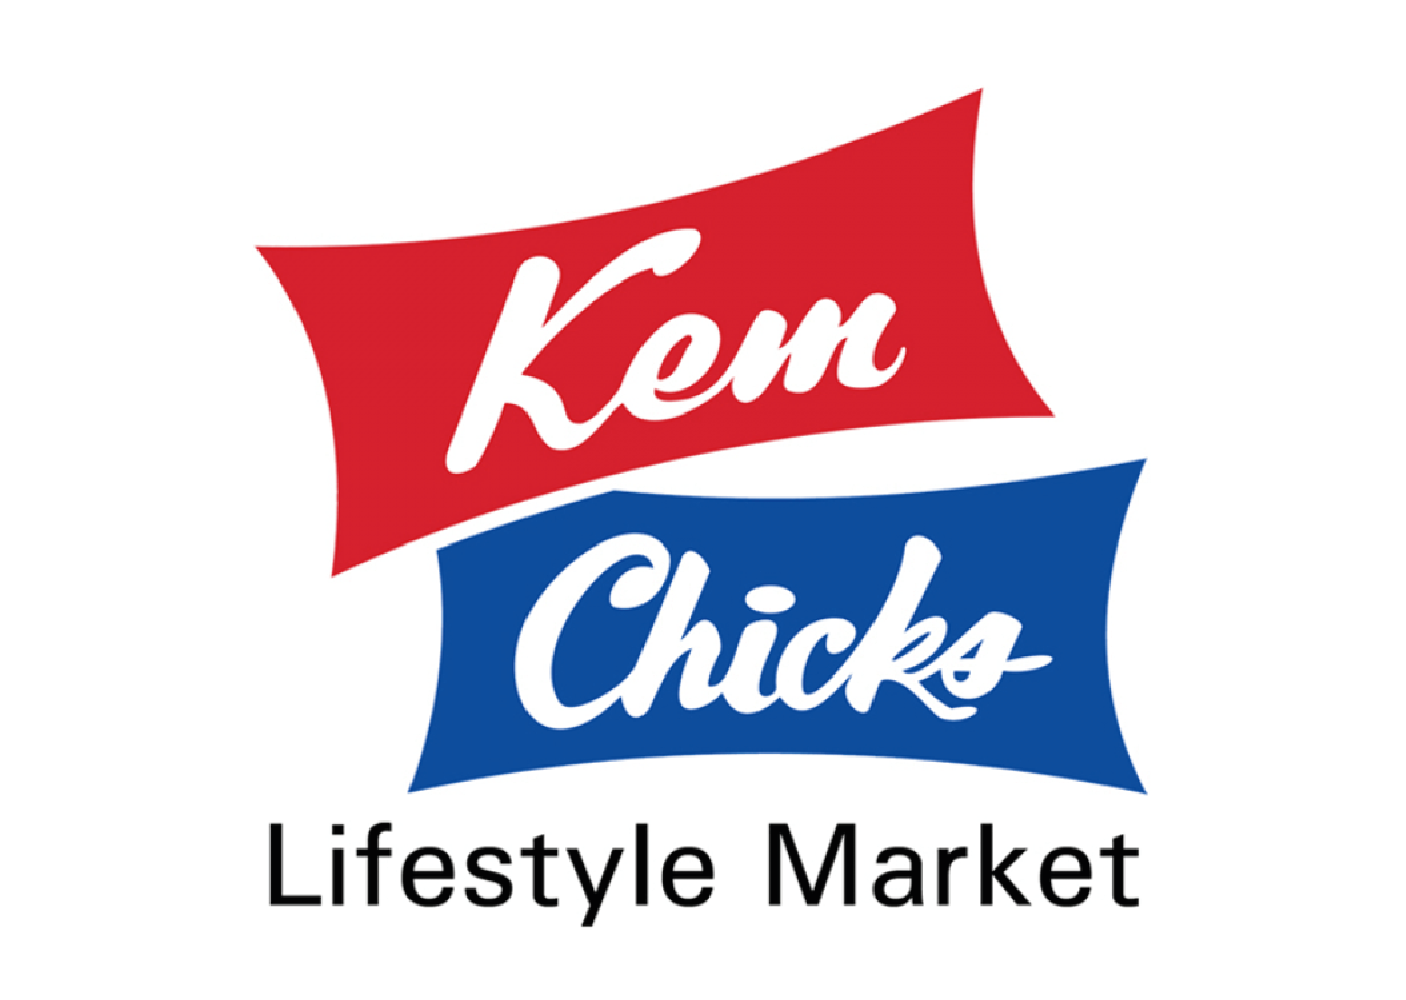 Ken chick